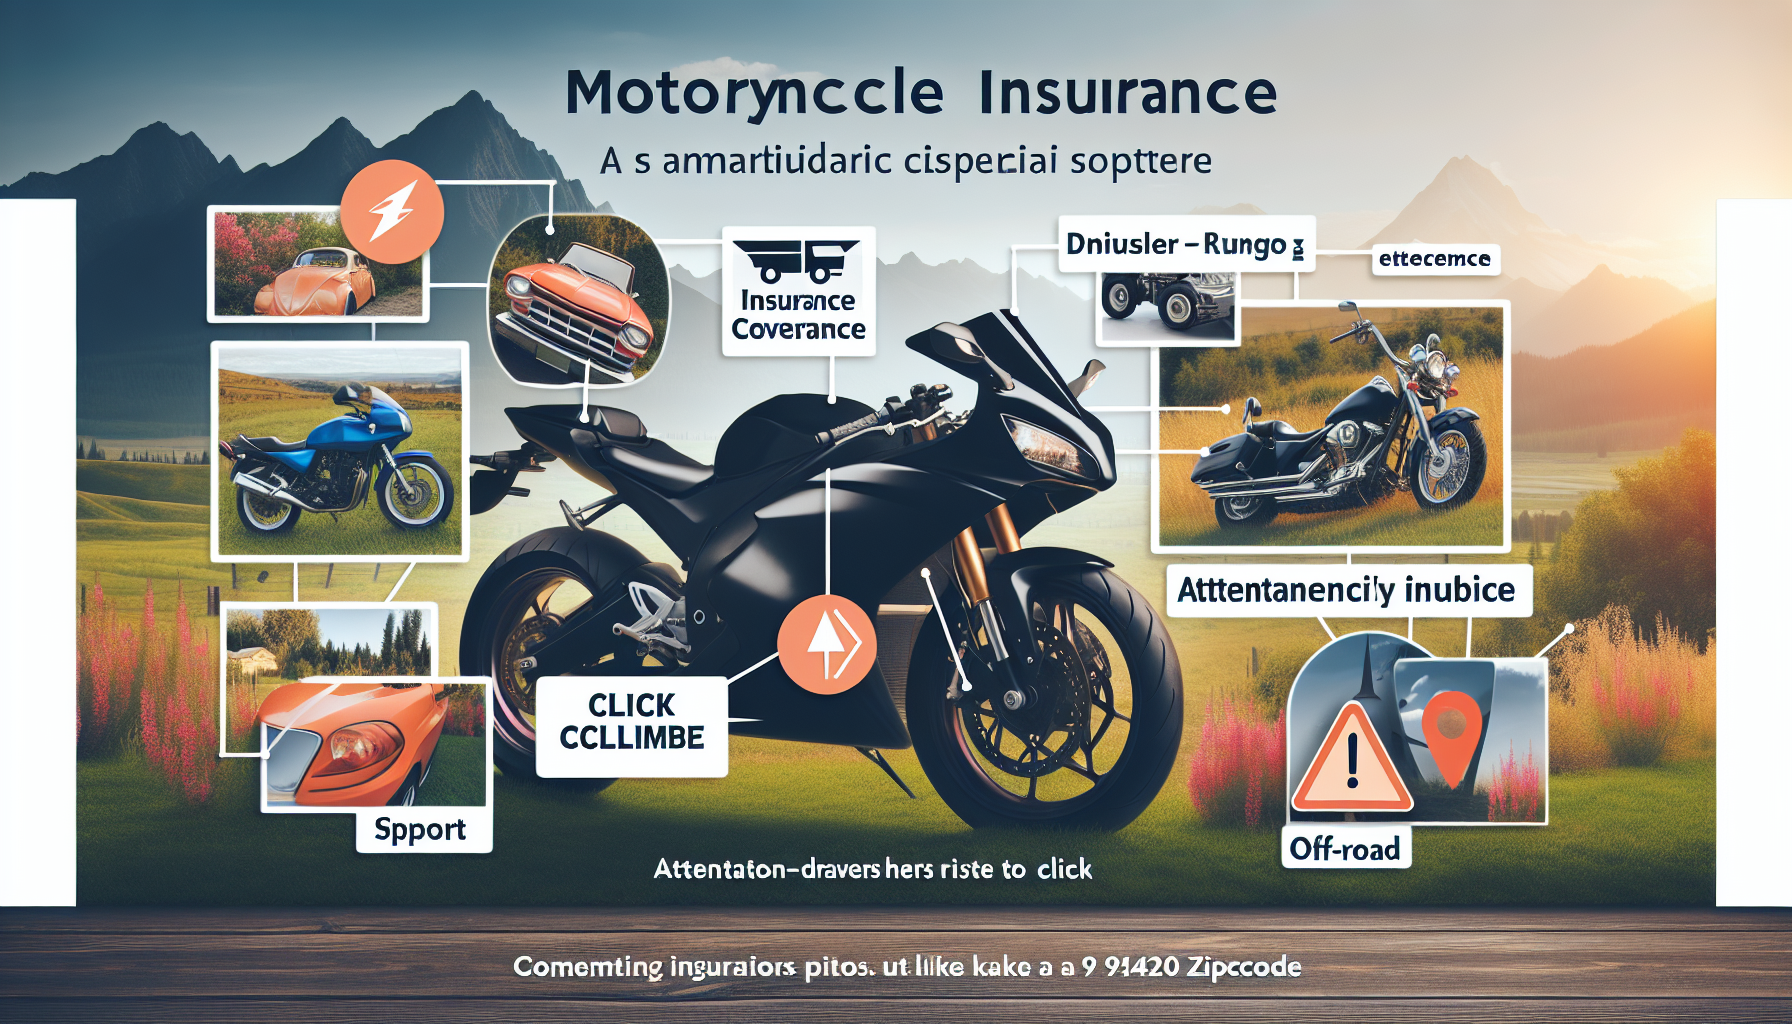 découvrez notre comparatif des assurances moto 97420 pour trouver la meilleure assurance moto 97420 grâce à notre comparateur. trouvez l'assurance moto 97420 adaptée à vos besoins en comparant les tarifs et les garanties.